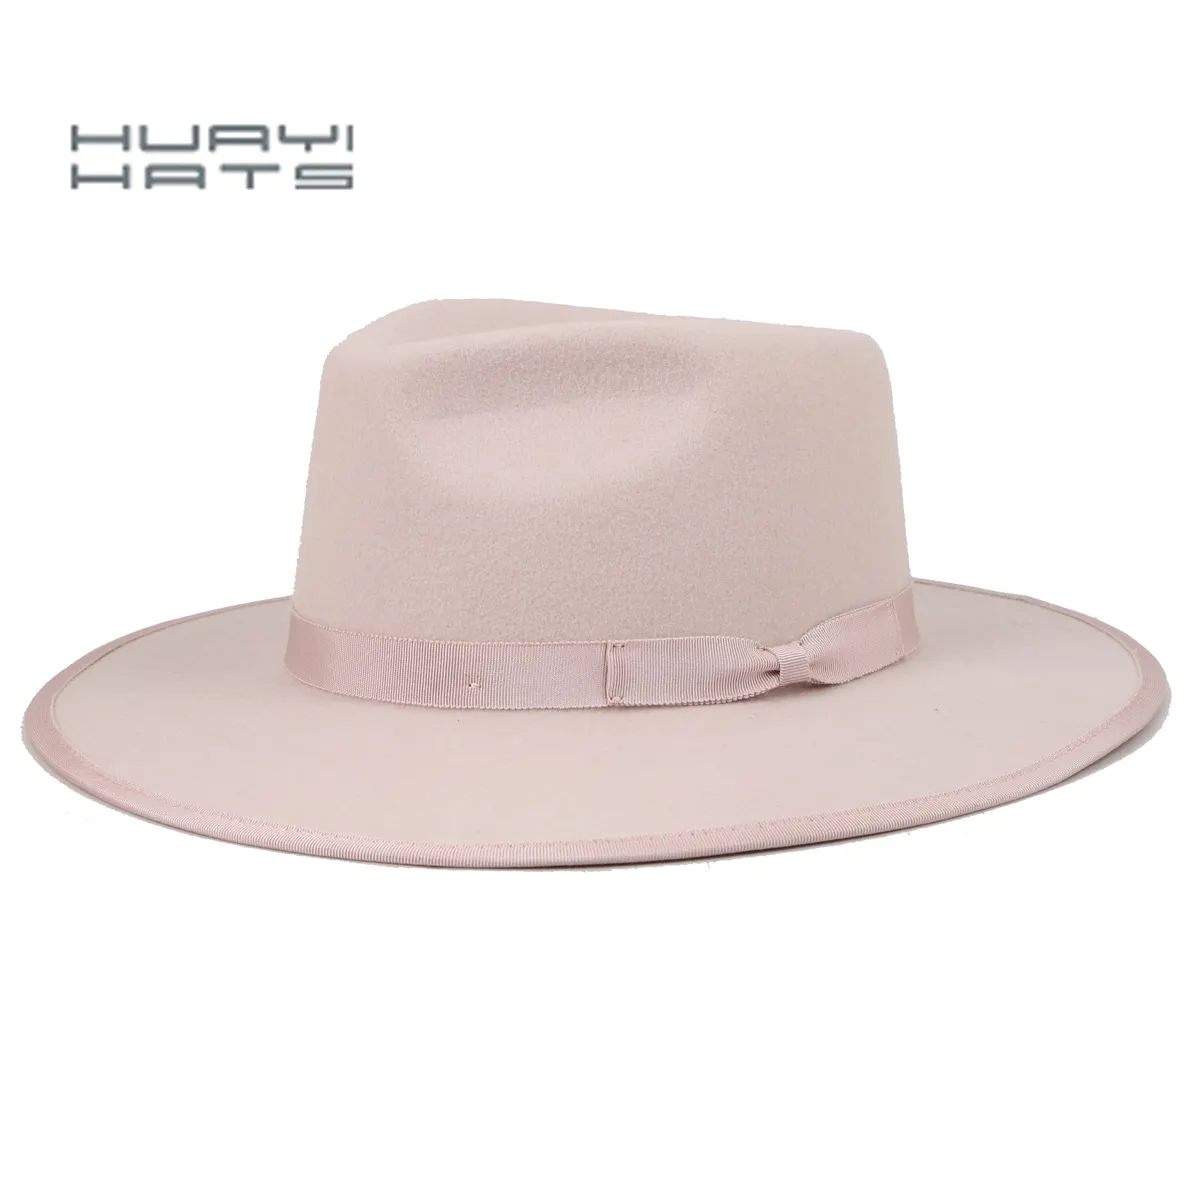 سينوبيك القبعات أزياء الشتاء مخصص قبعة فيدورا بملمس صوف القبعات للنساء الوردي القبعات مع مخصص شعار prty